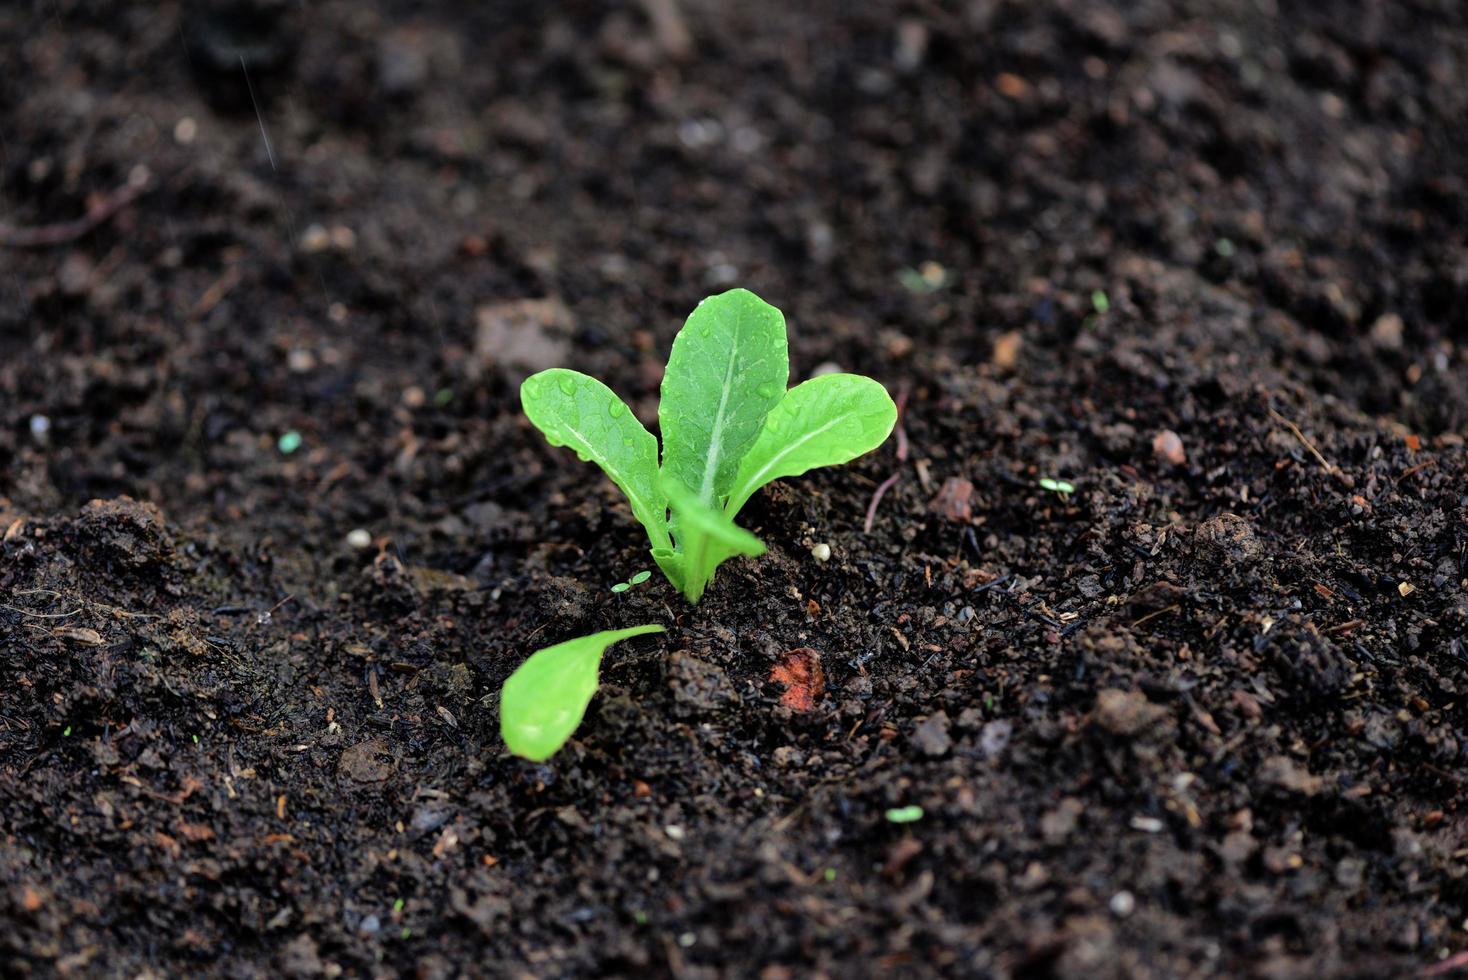 planter des légumes feuille de laitue sur le sol dans le jardin - jeune plante verte en croissance jardinage plantation agriculture concept photo